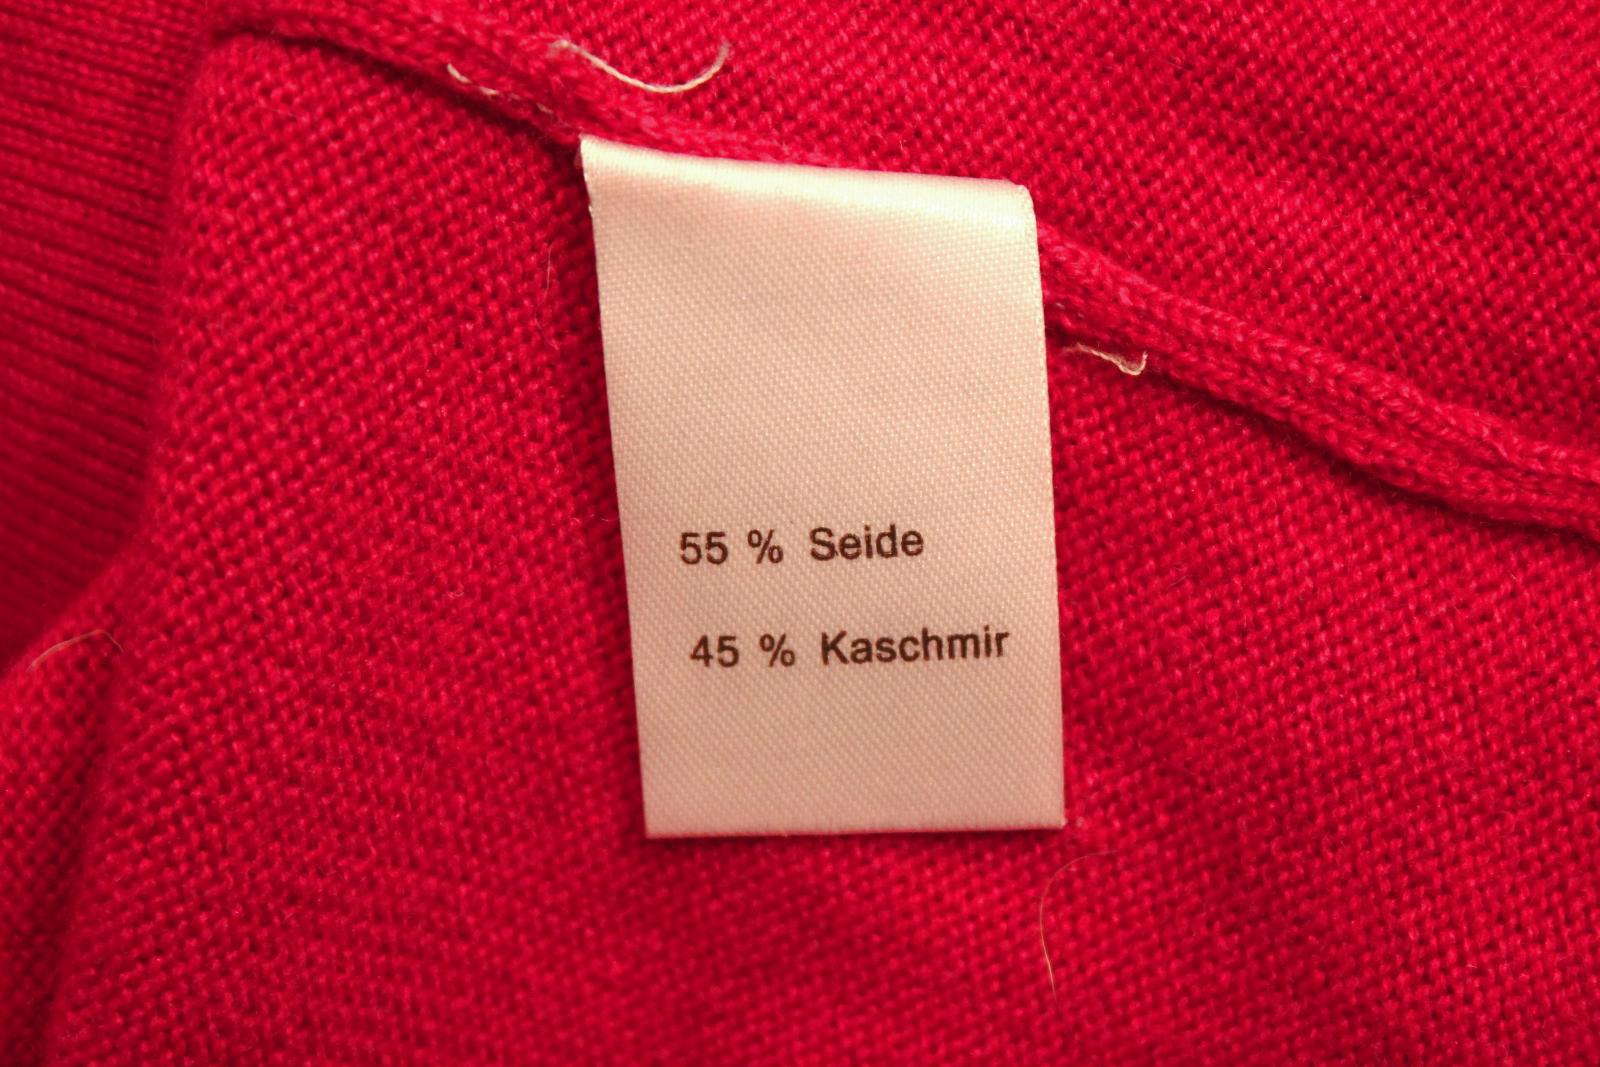 Jemný kašmírový svetr červený II, HEDVÁBÍ KAŠMÍR - Dámské oblečení